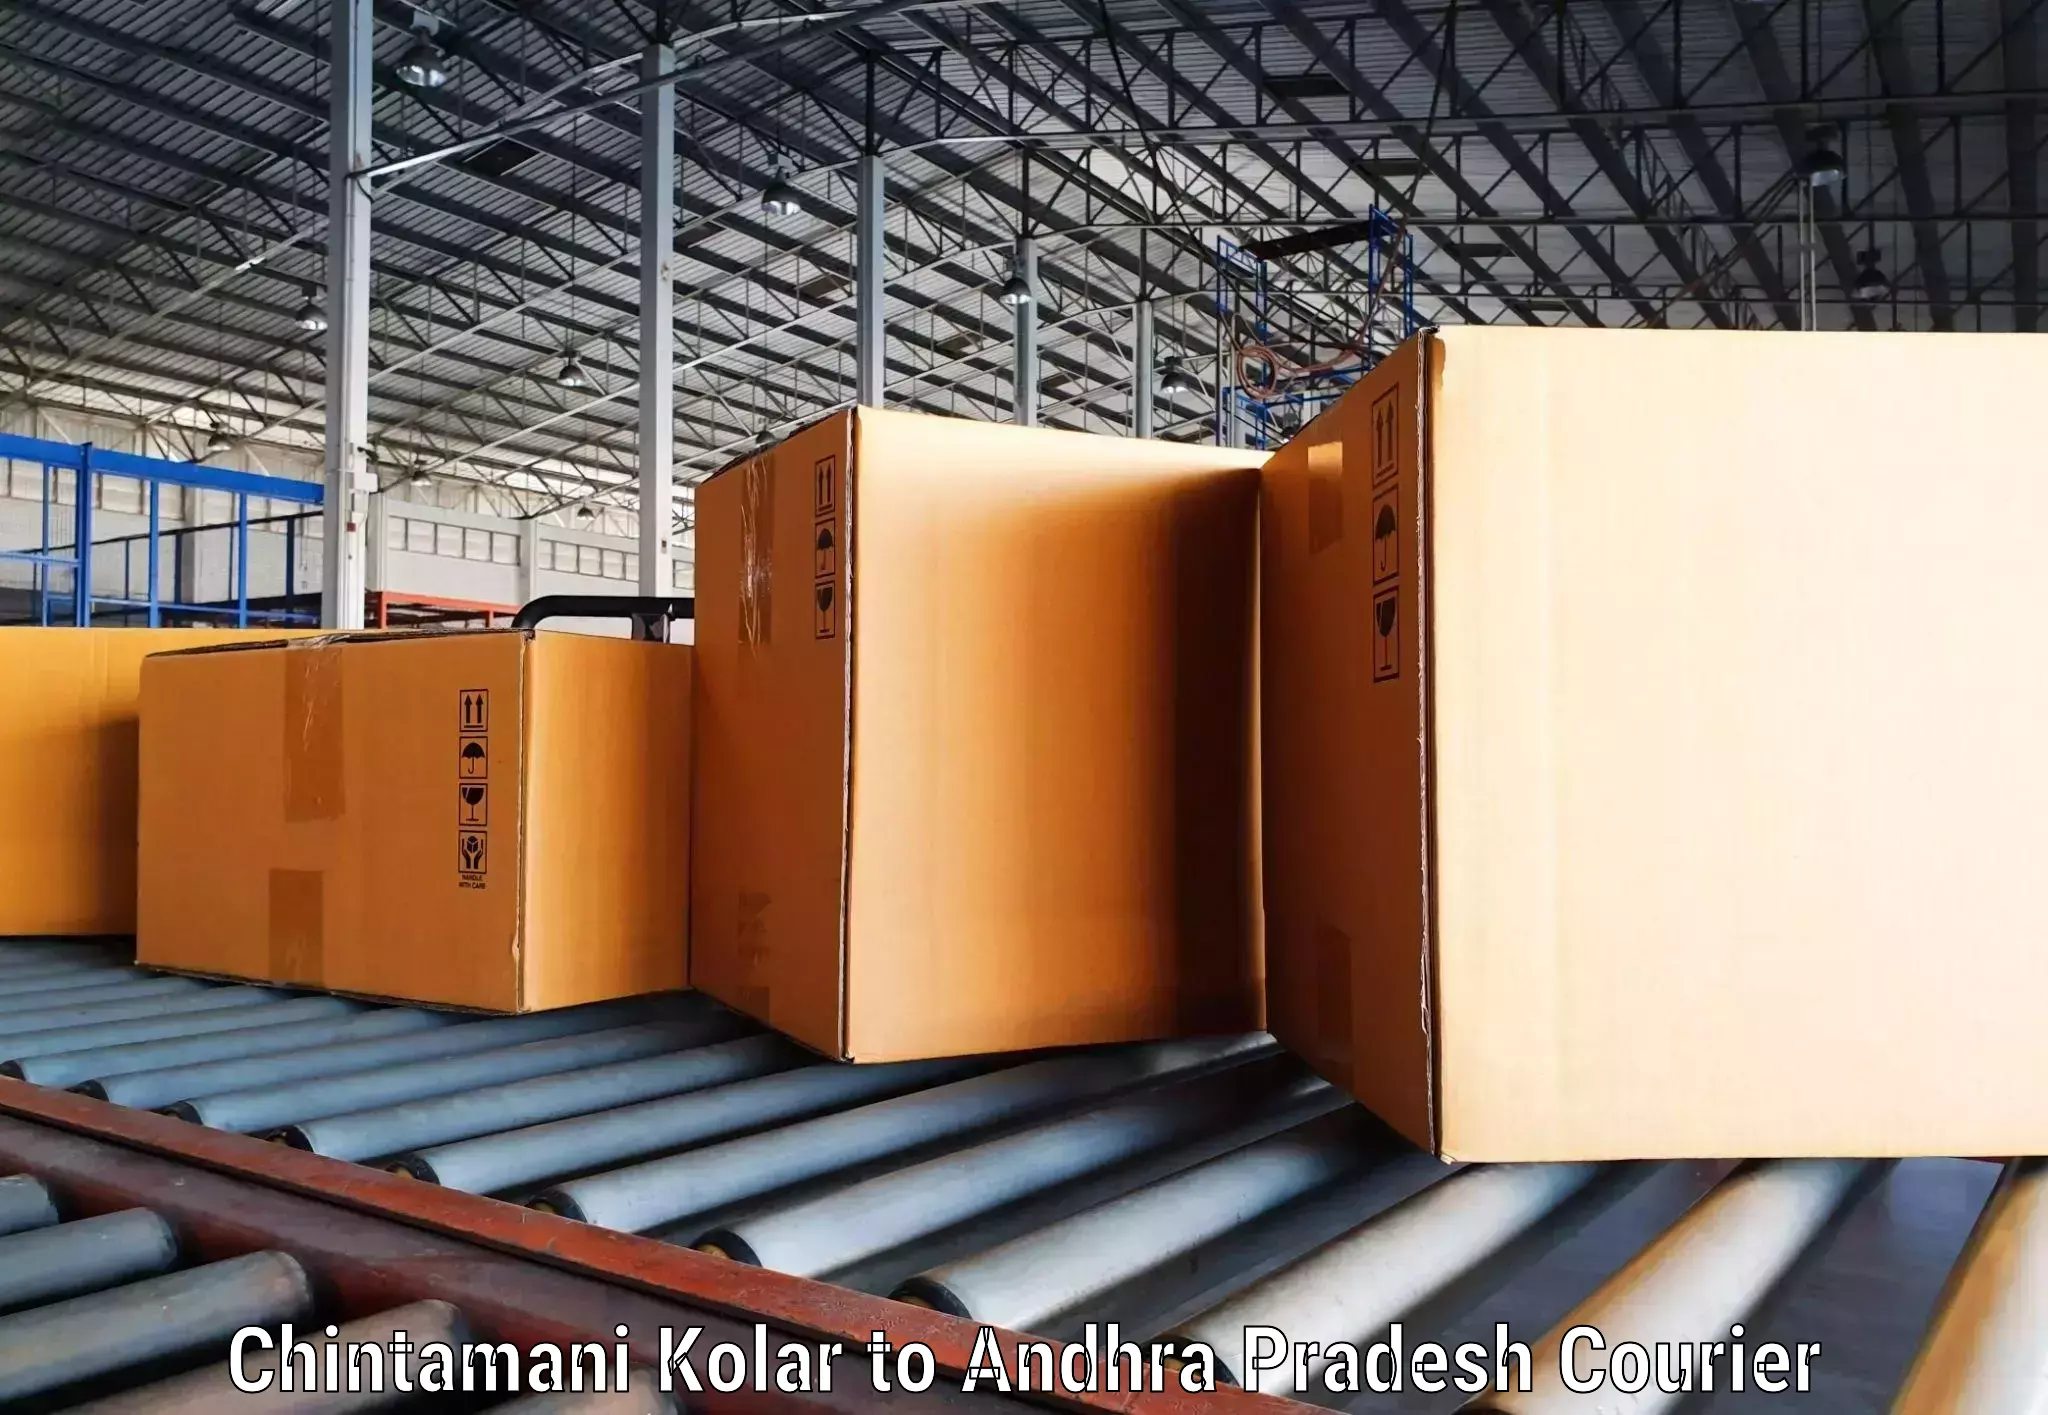 E-commerce logistics support Chintamani Kolar to Gajapathinagaram